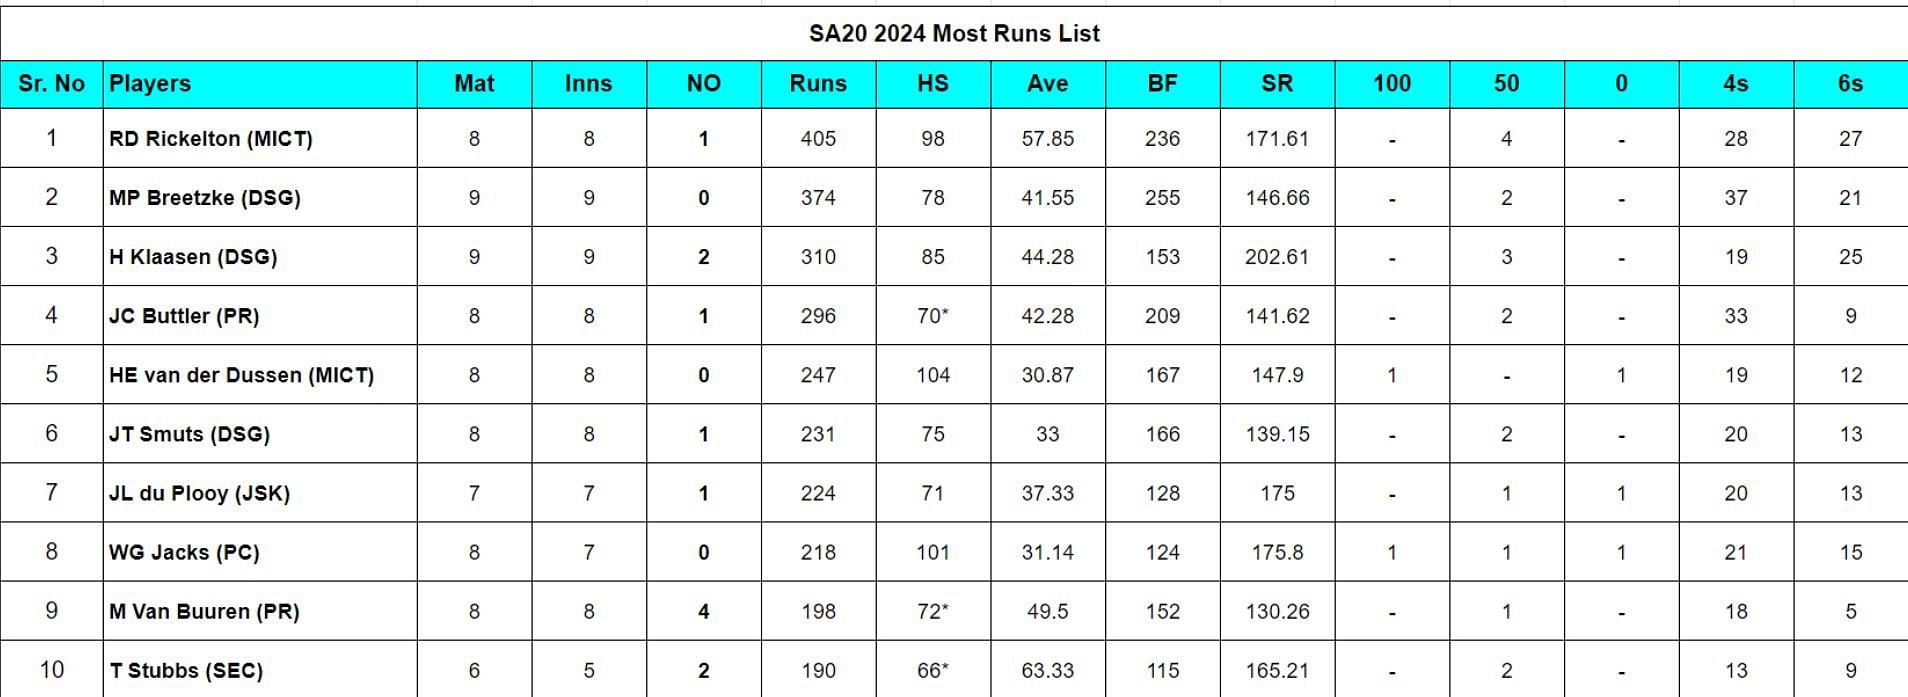 SA20 2024 Most Runs List updated after match 24